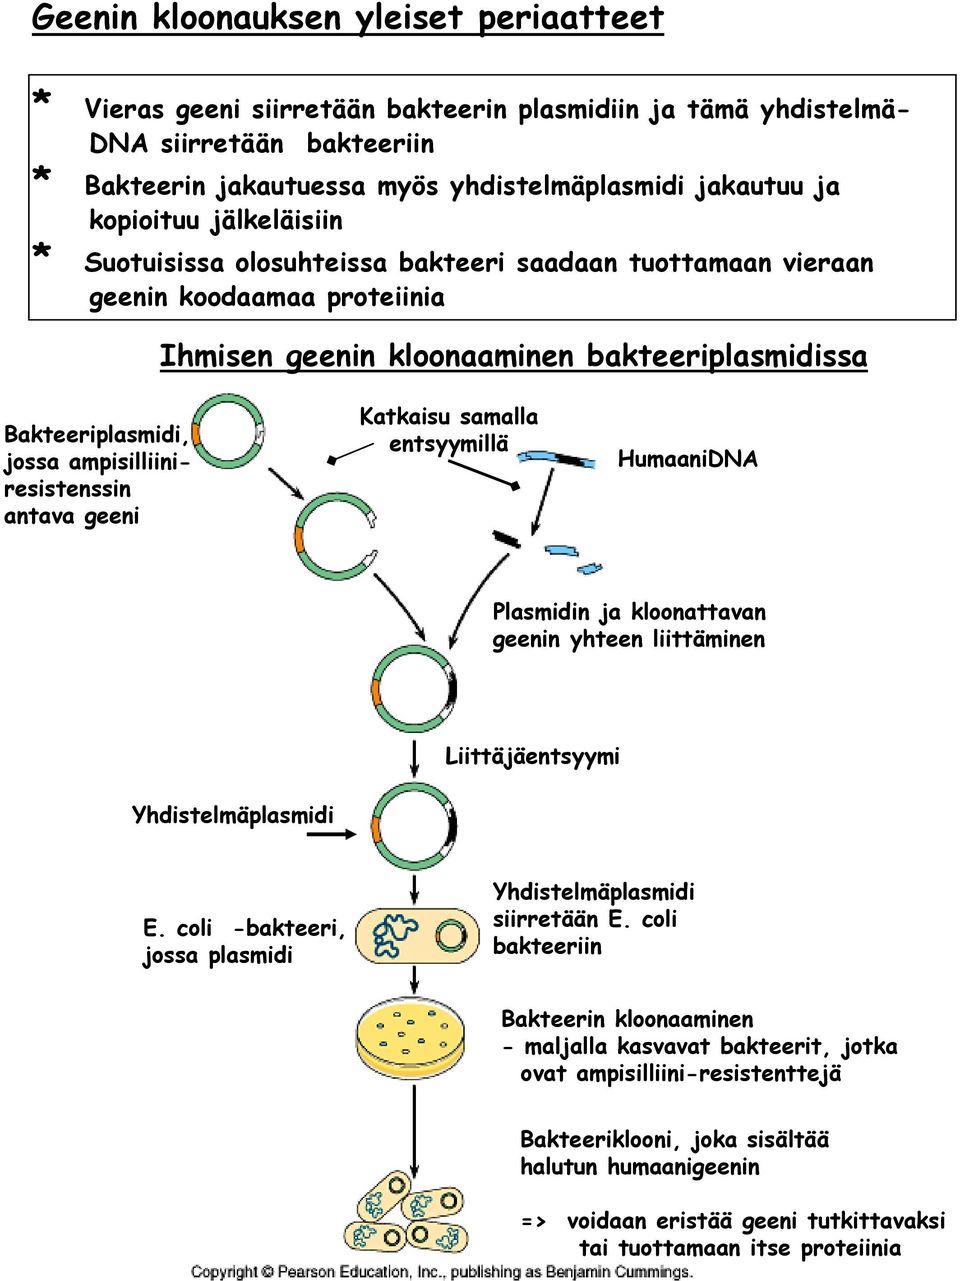 ampisilliiniresistenssin antava geeni Katkaisu samalla entsyymillä HumaaniDNA Plasmidin ja kloonattavan geenin yhteen liittäminen Liittäjäentsyymi Yhdistelmäplasmidi E.